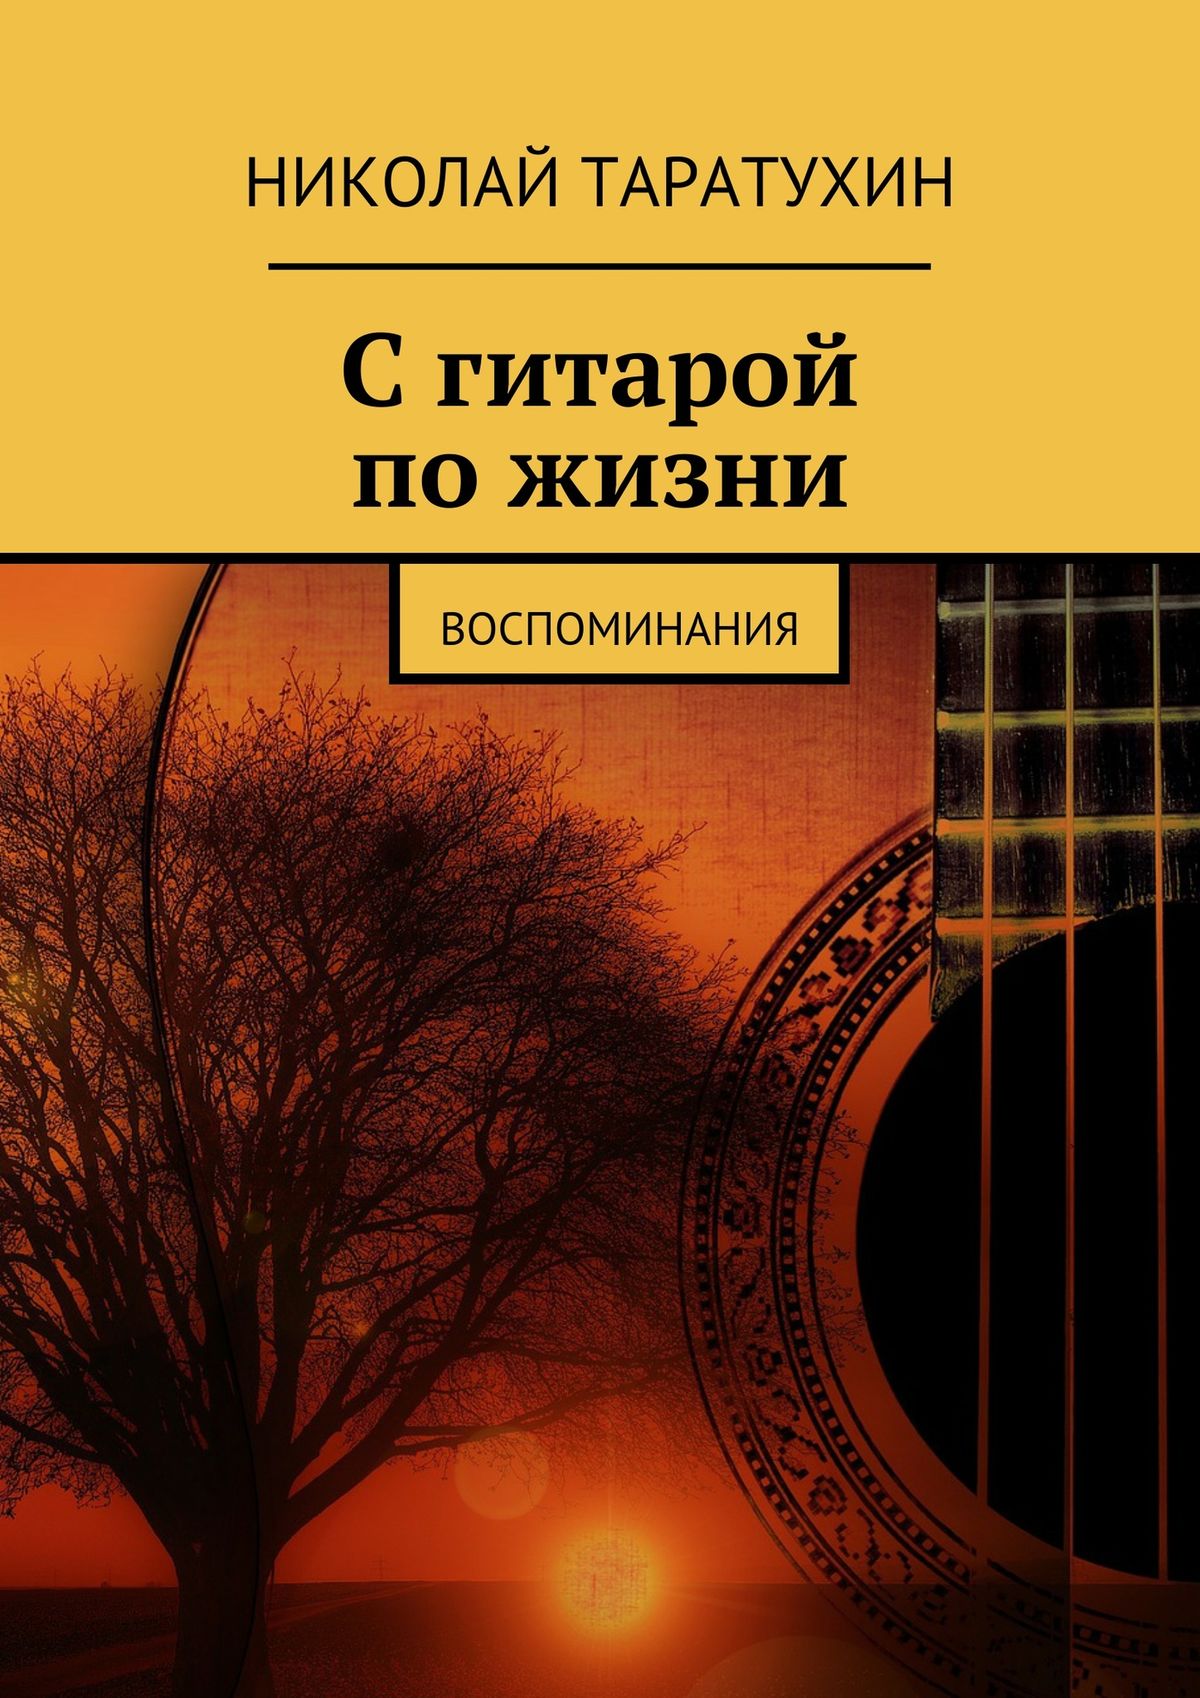 Николай Таратухин С гитарой по жизни. Воспоминания